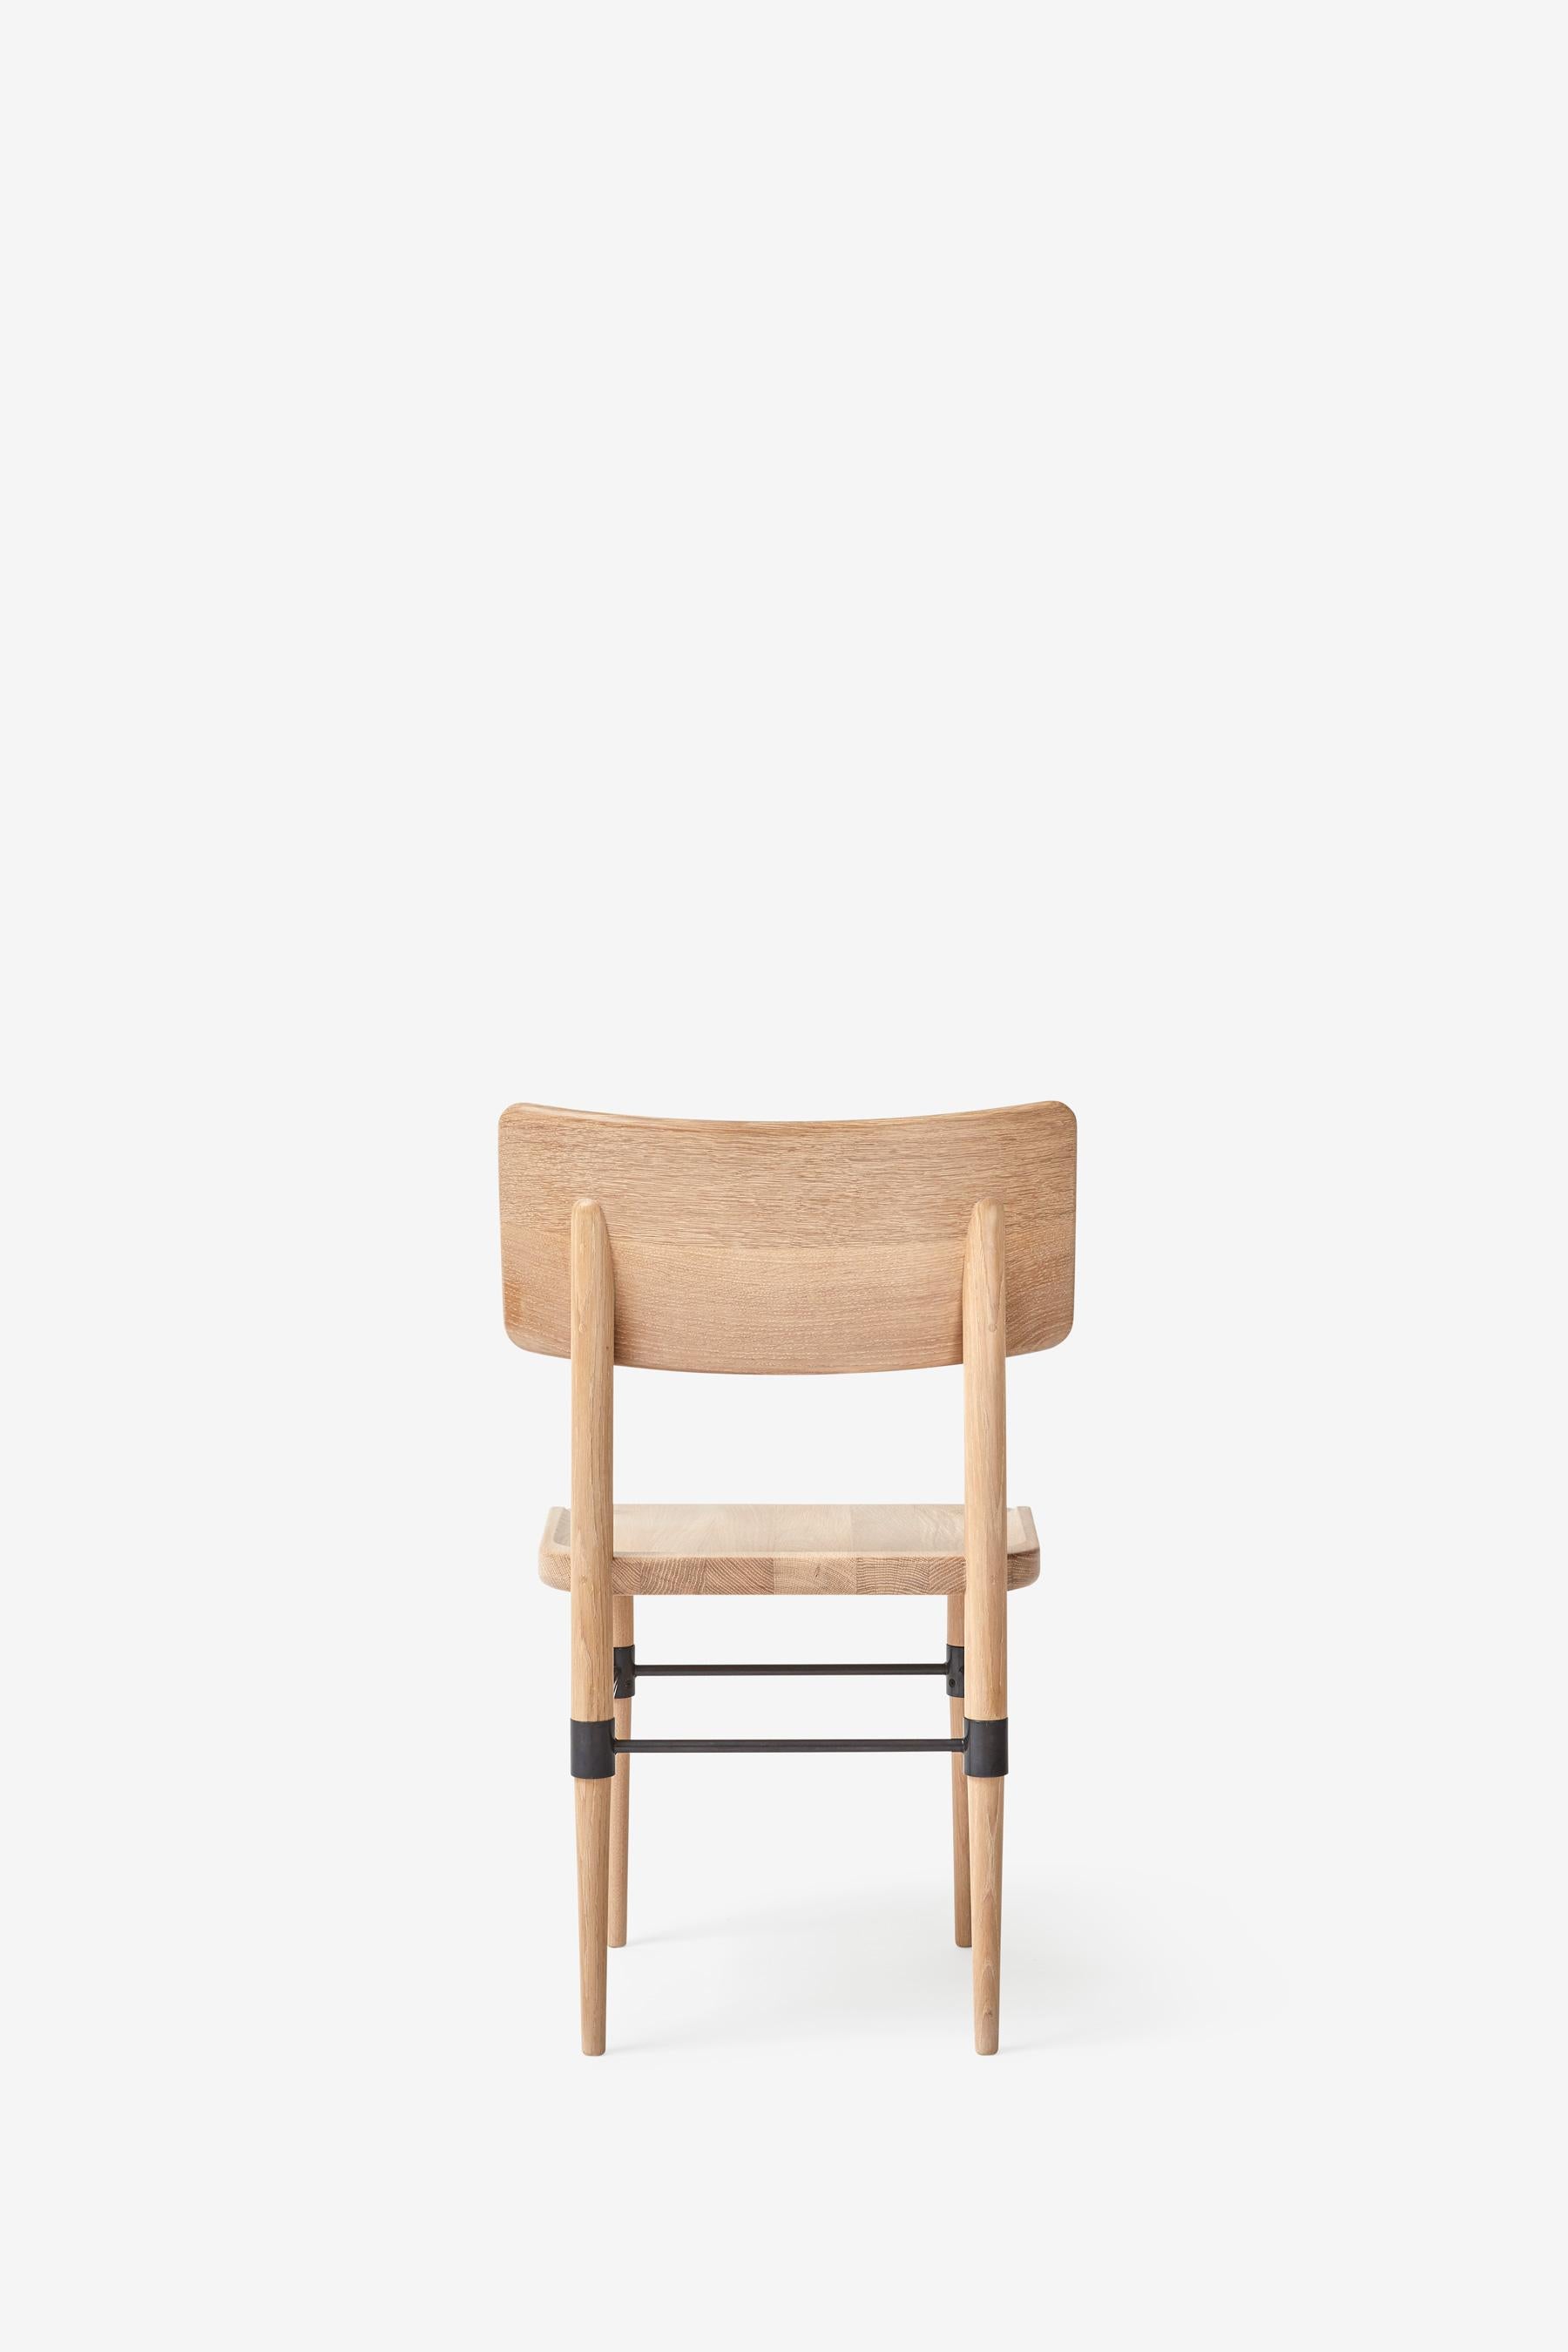 Danish MG101 Dining chair in light oak by Malte Gormsen Design by Space Copenhagen For Sale